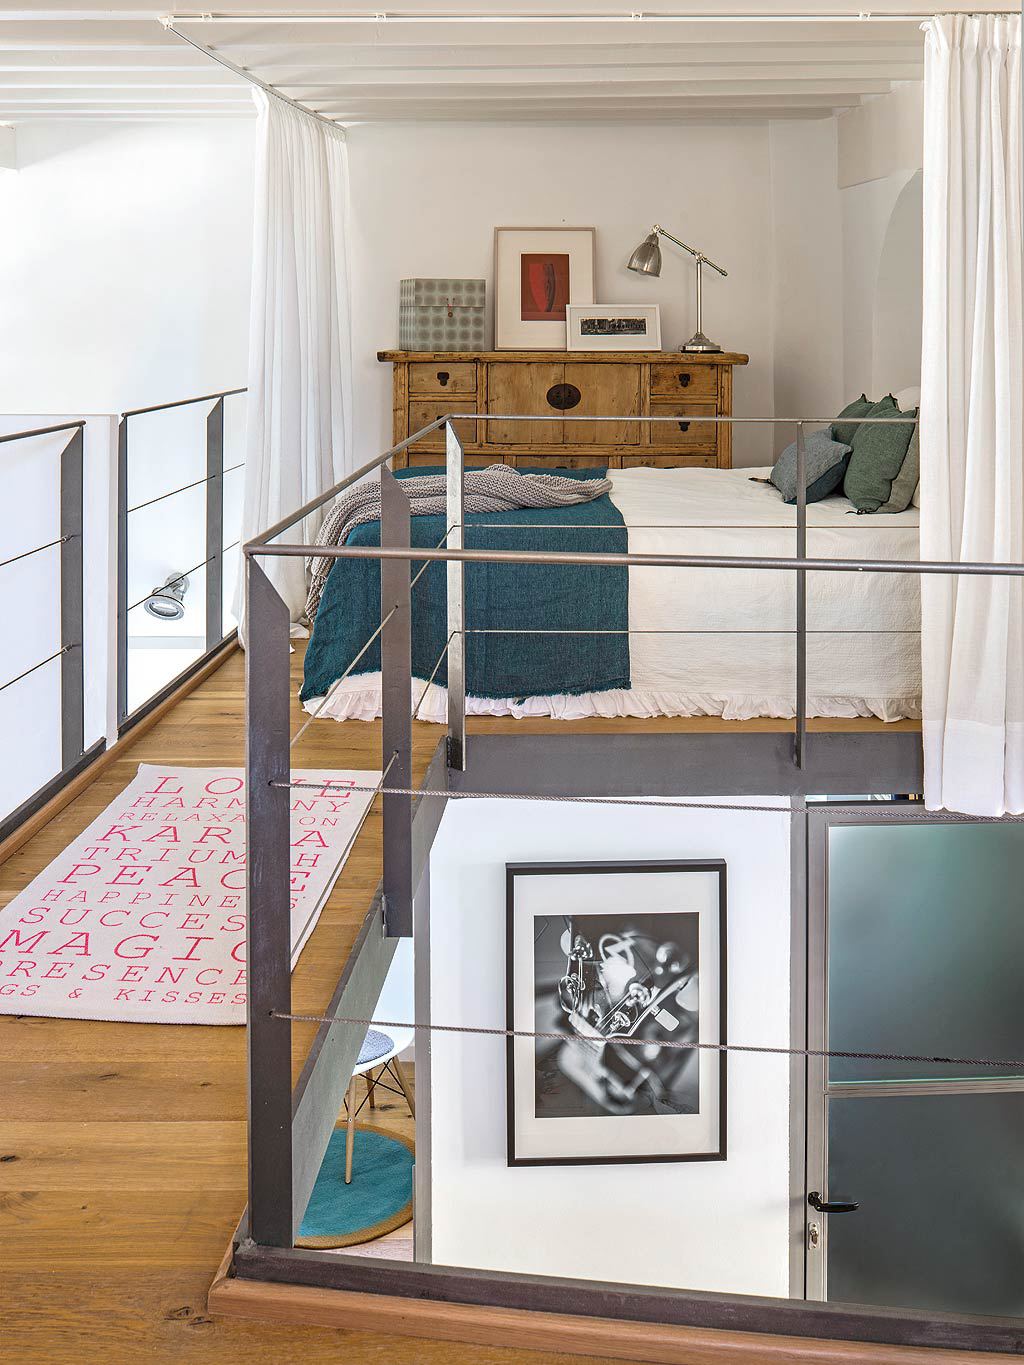 Спальня на втором уровне дома. Для достижения большей приватности спальню можно зашторить легкой белой шторой.